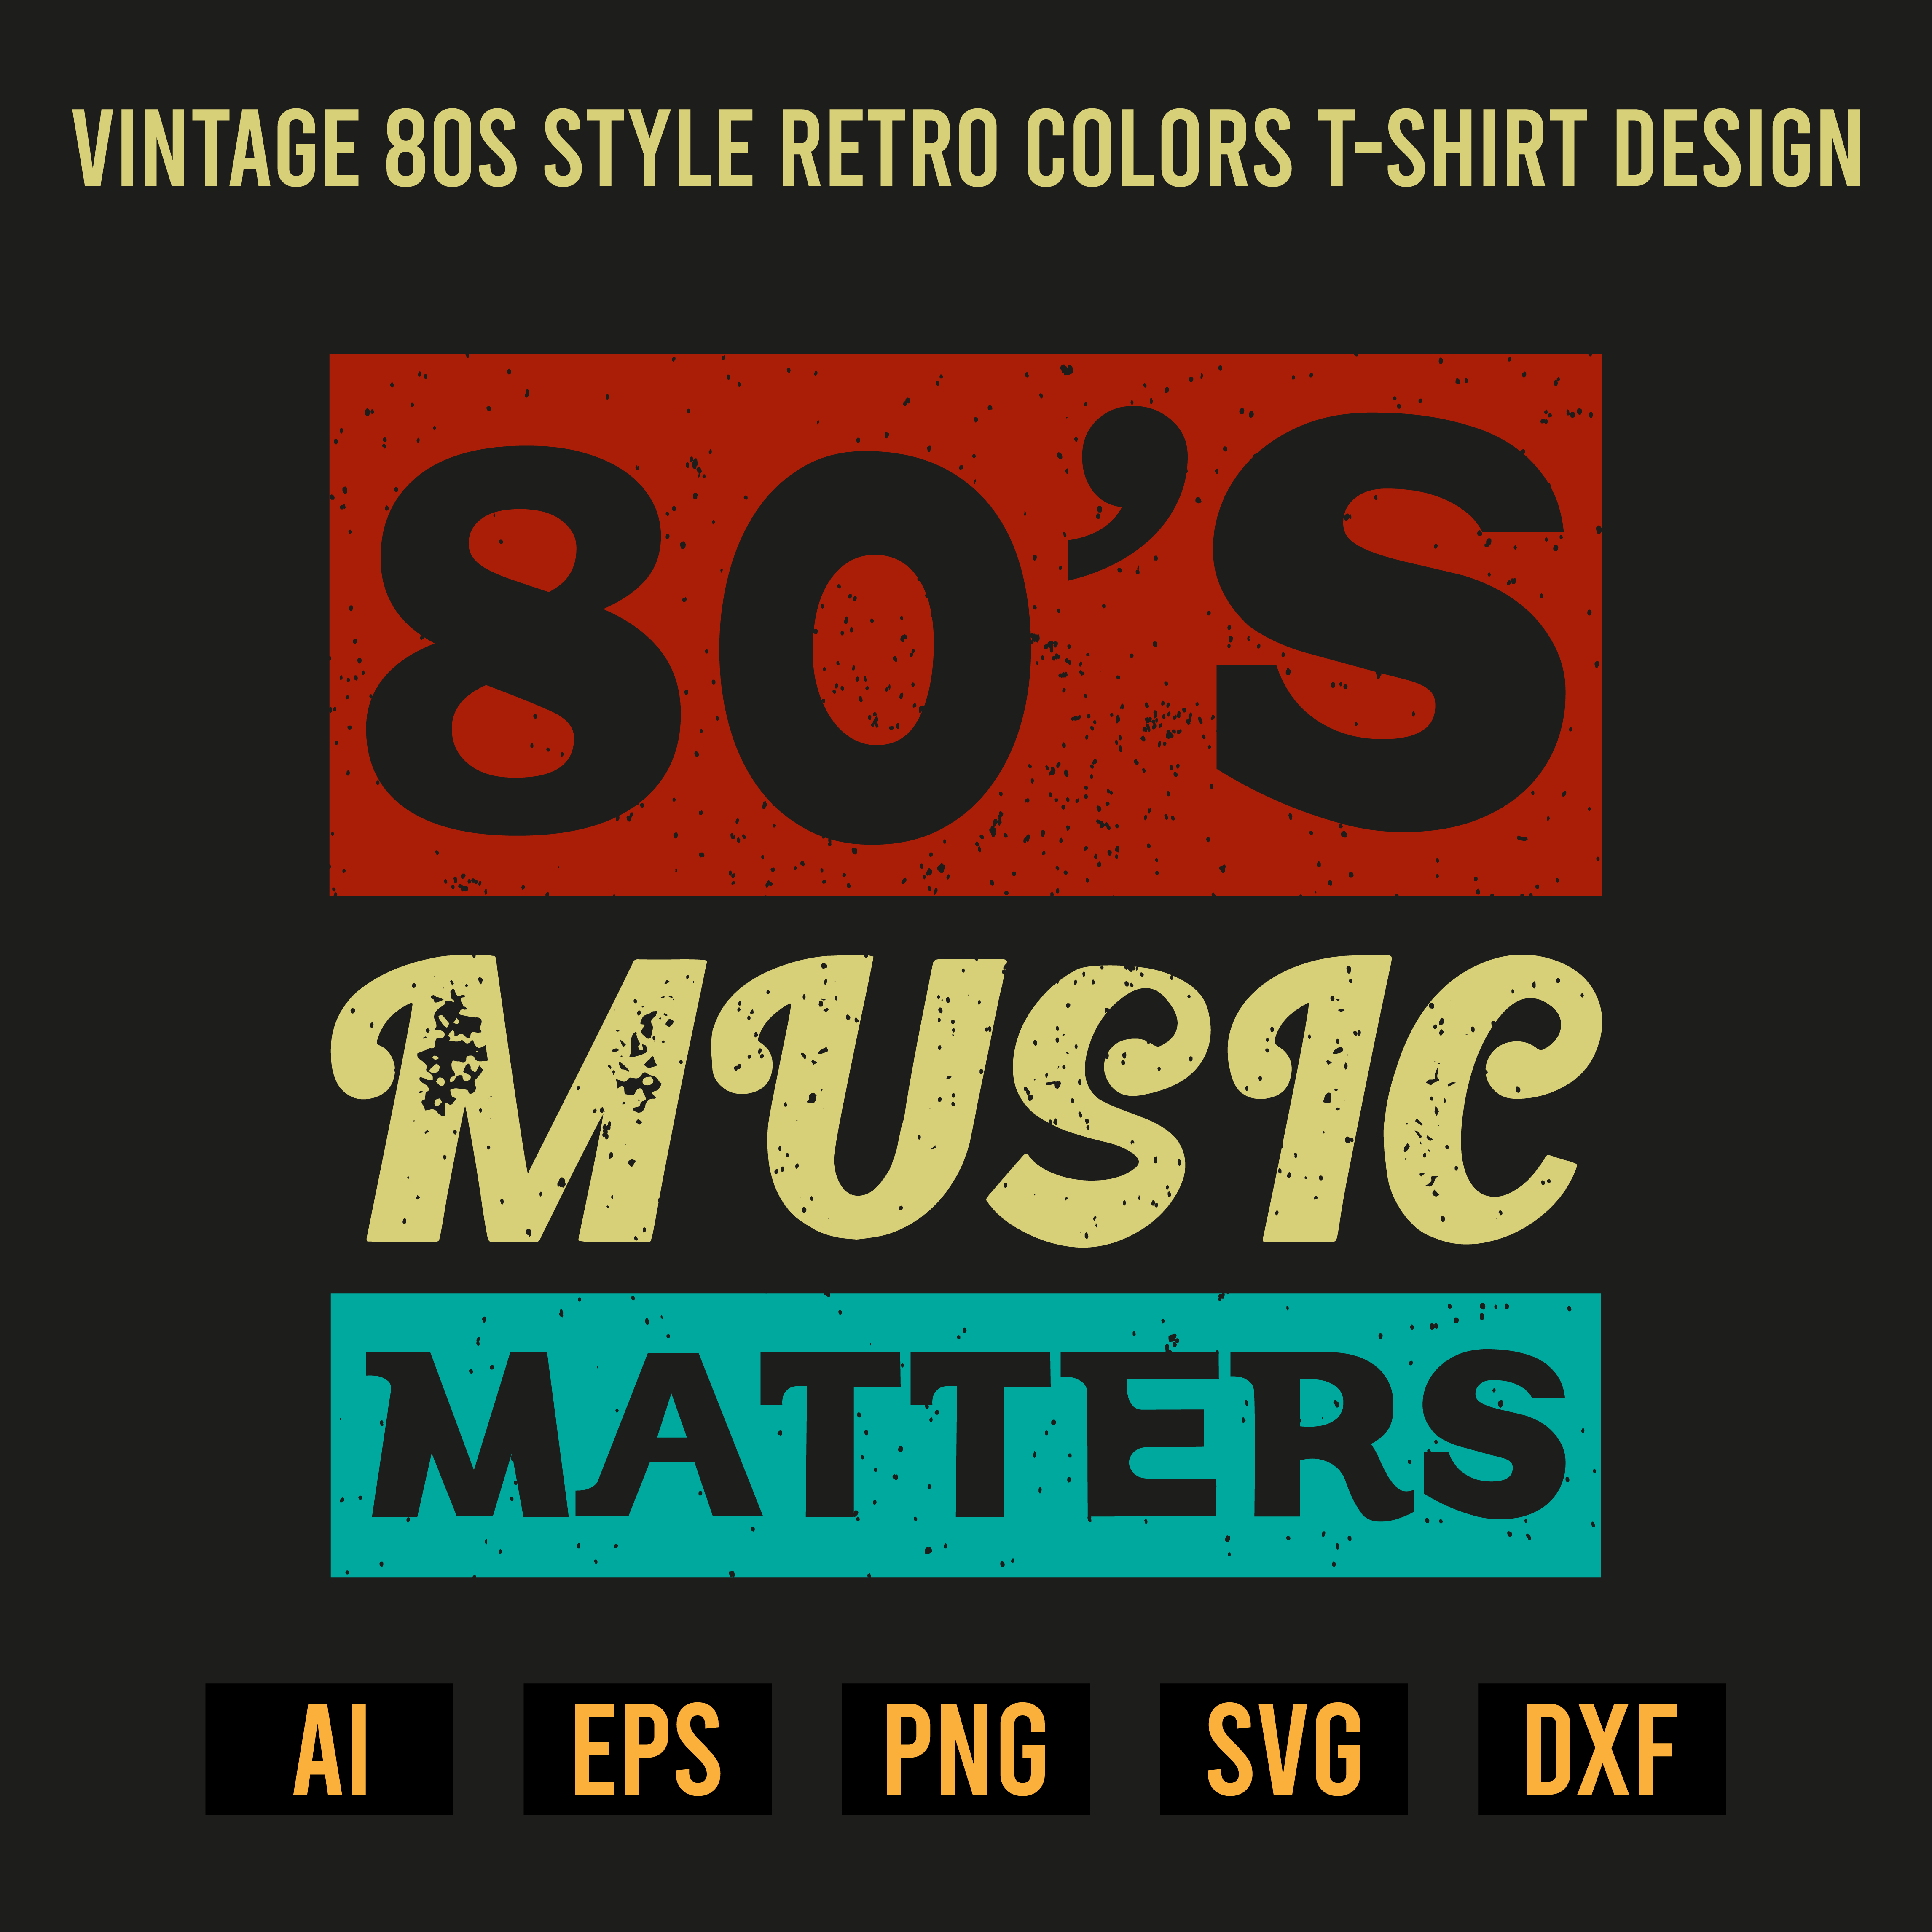 Vintage 80s Style Retro Colors T-Shirt Design preview image.